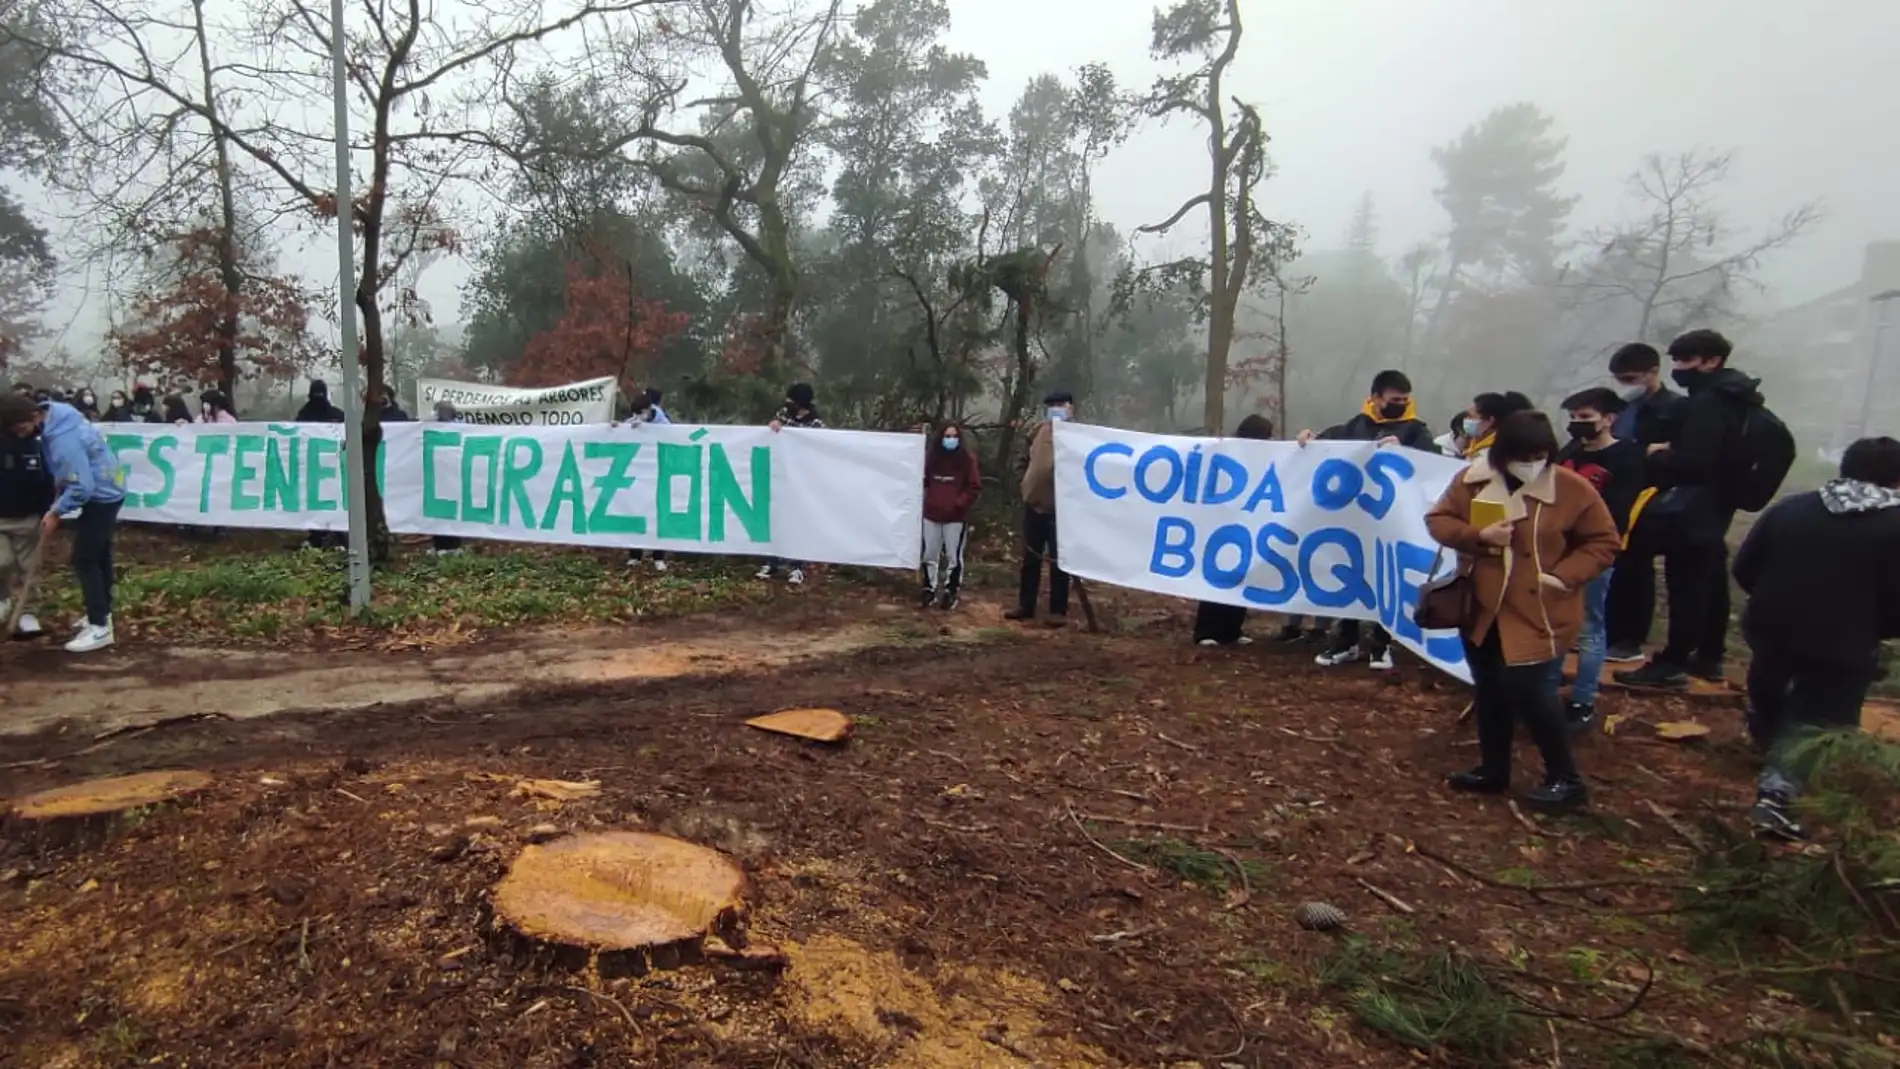 A Concellería de medioambiente paraliza a tala indiscriminada na Universidade Laboral